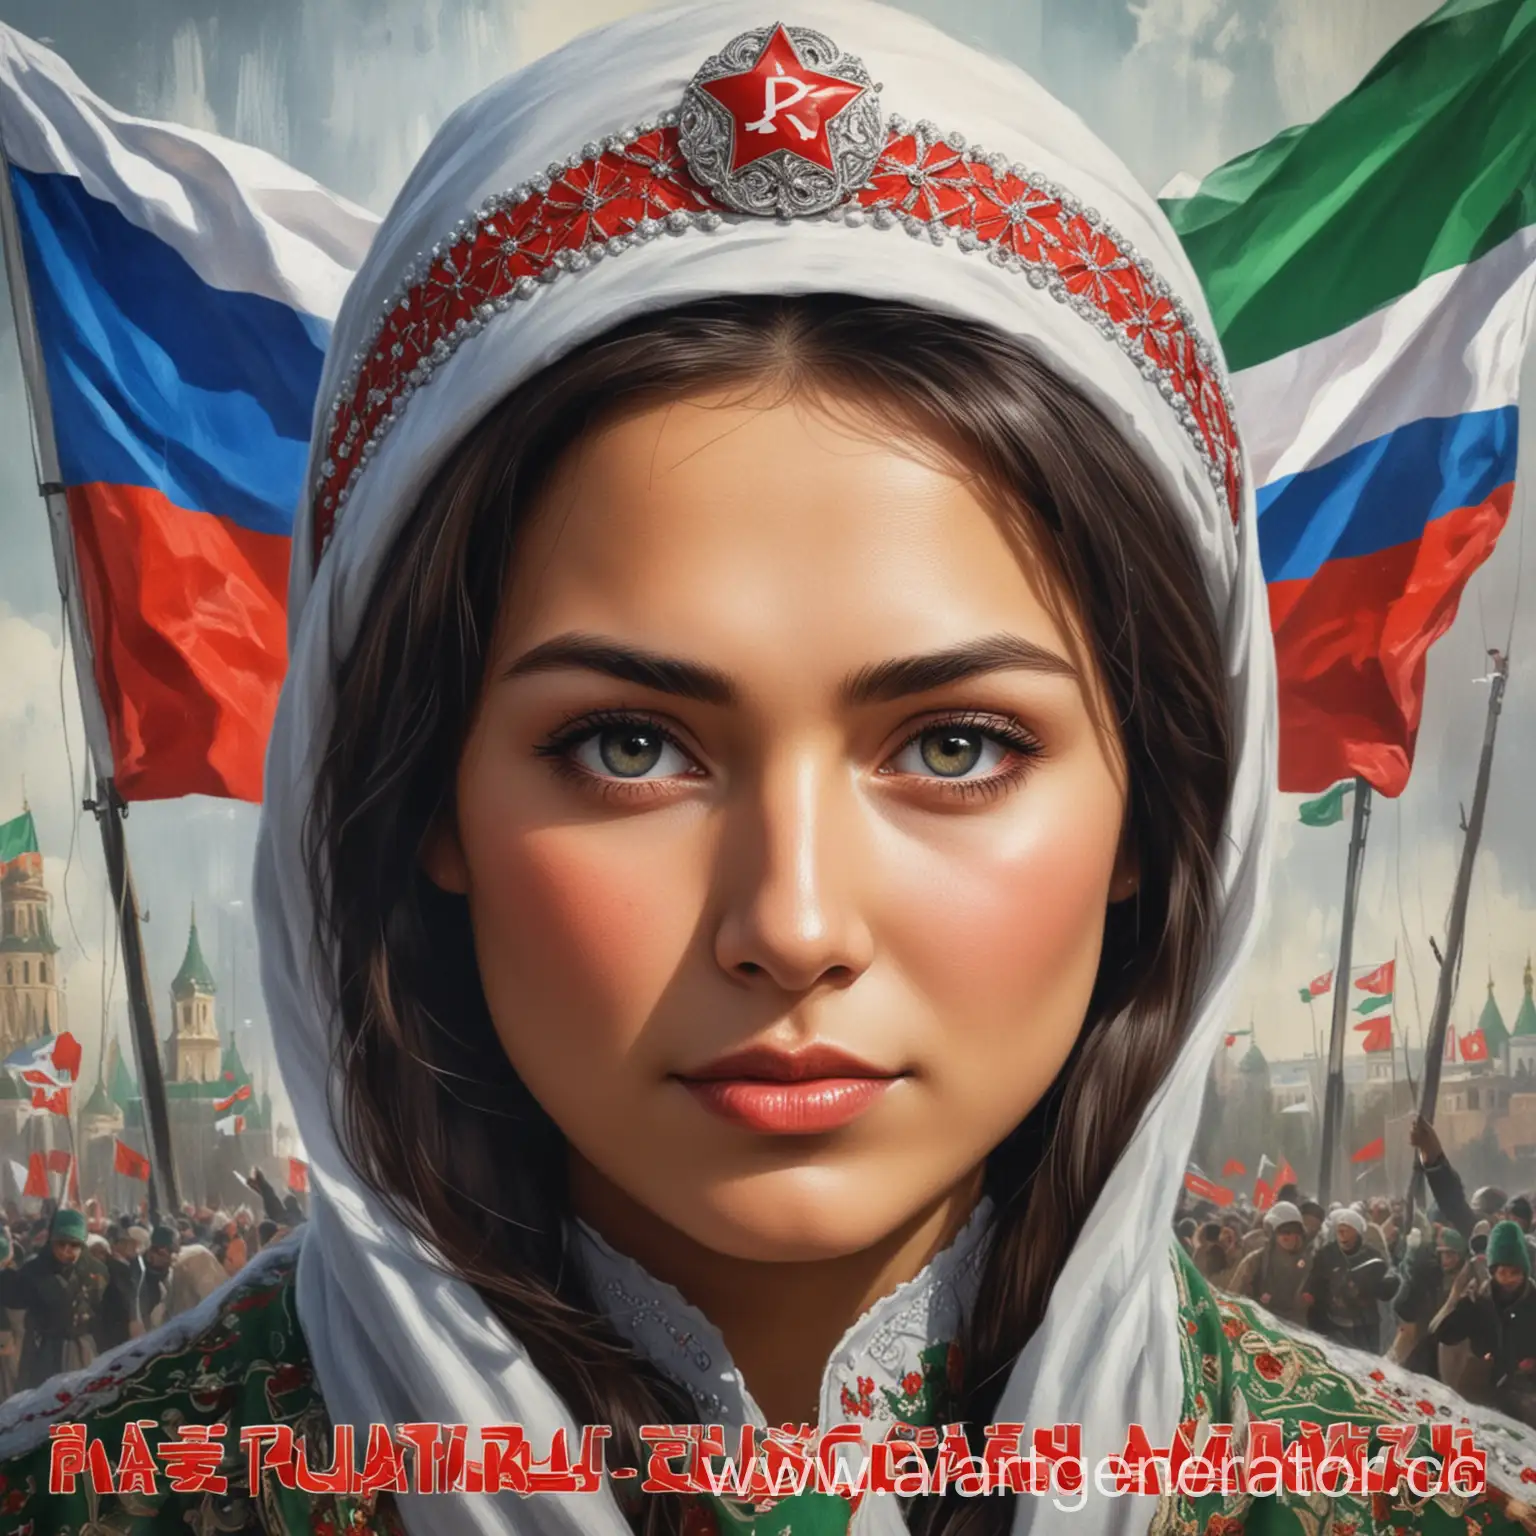 Сгенерируй афишу к патриотичной песне "Я - Россиянка" о Татарстане используя изображение